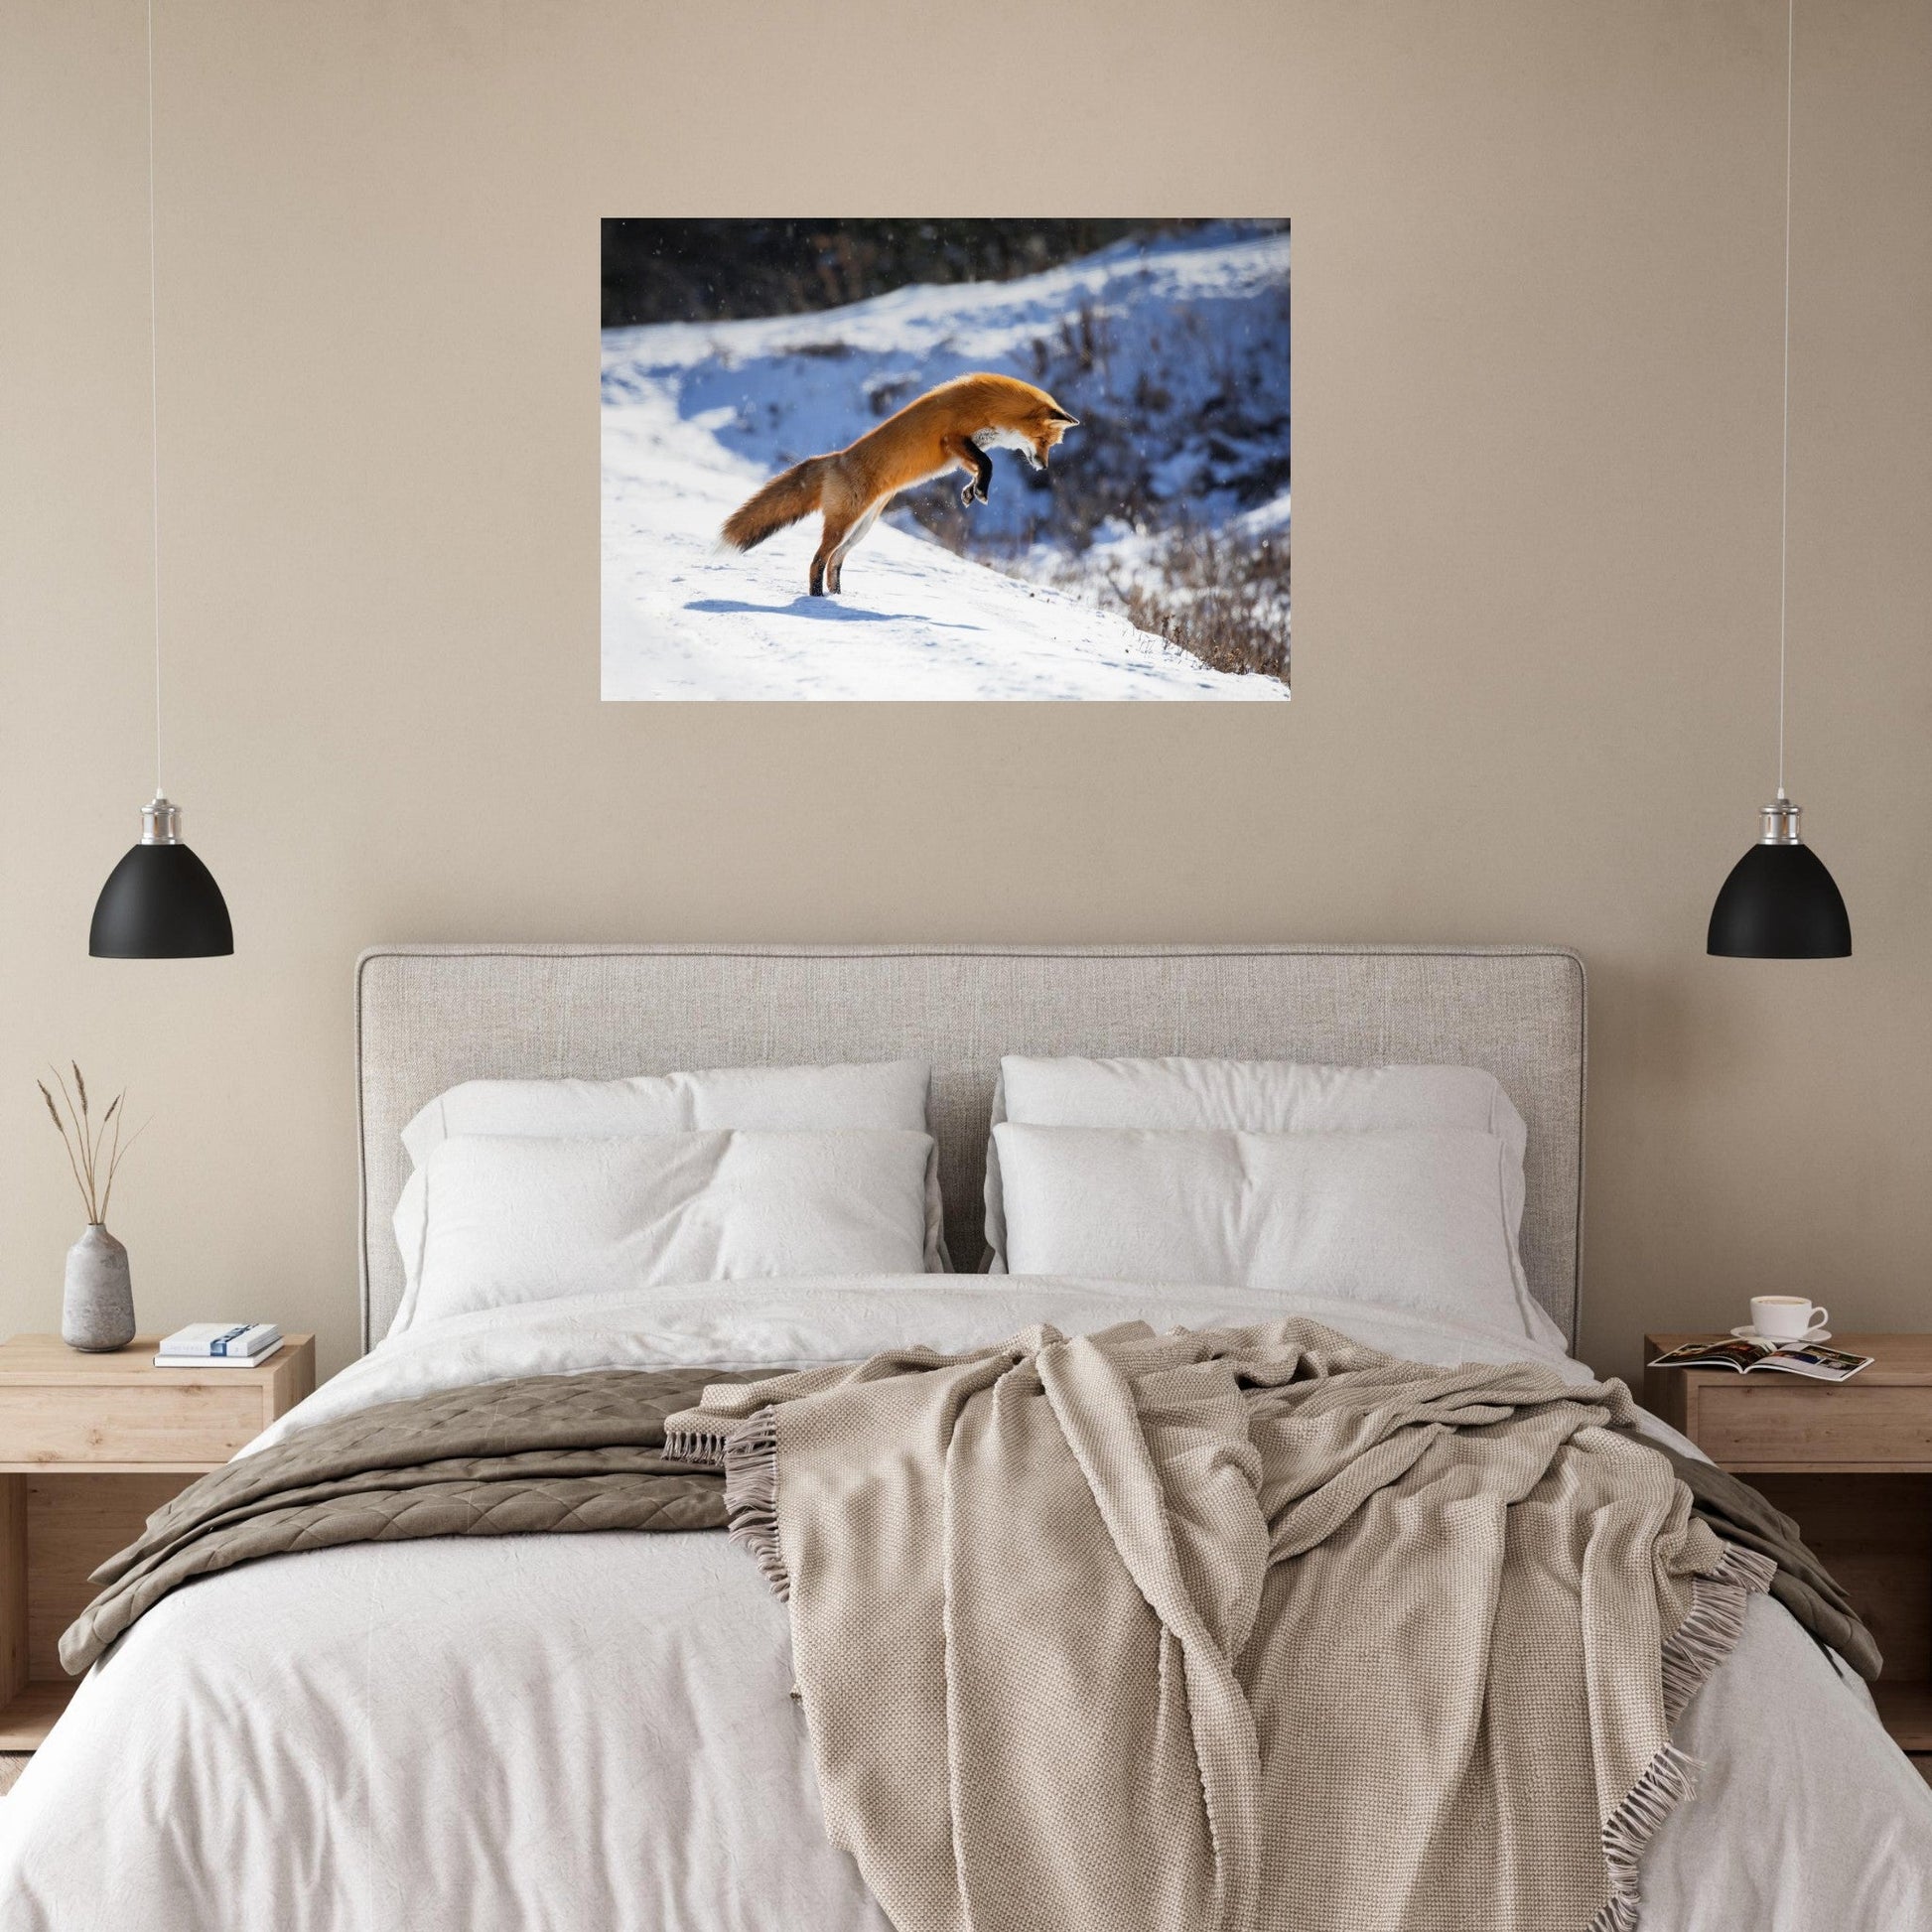 Vente Photo d'un renard qui saute dans la neige - Tableau photo alu montagne